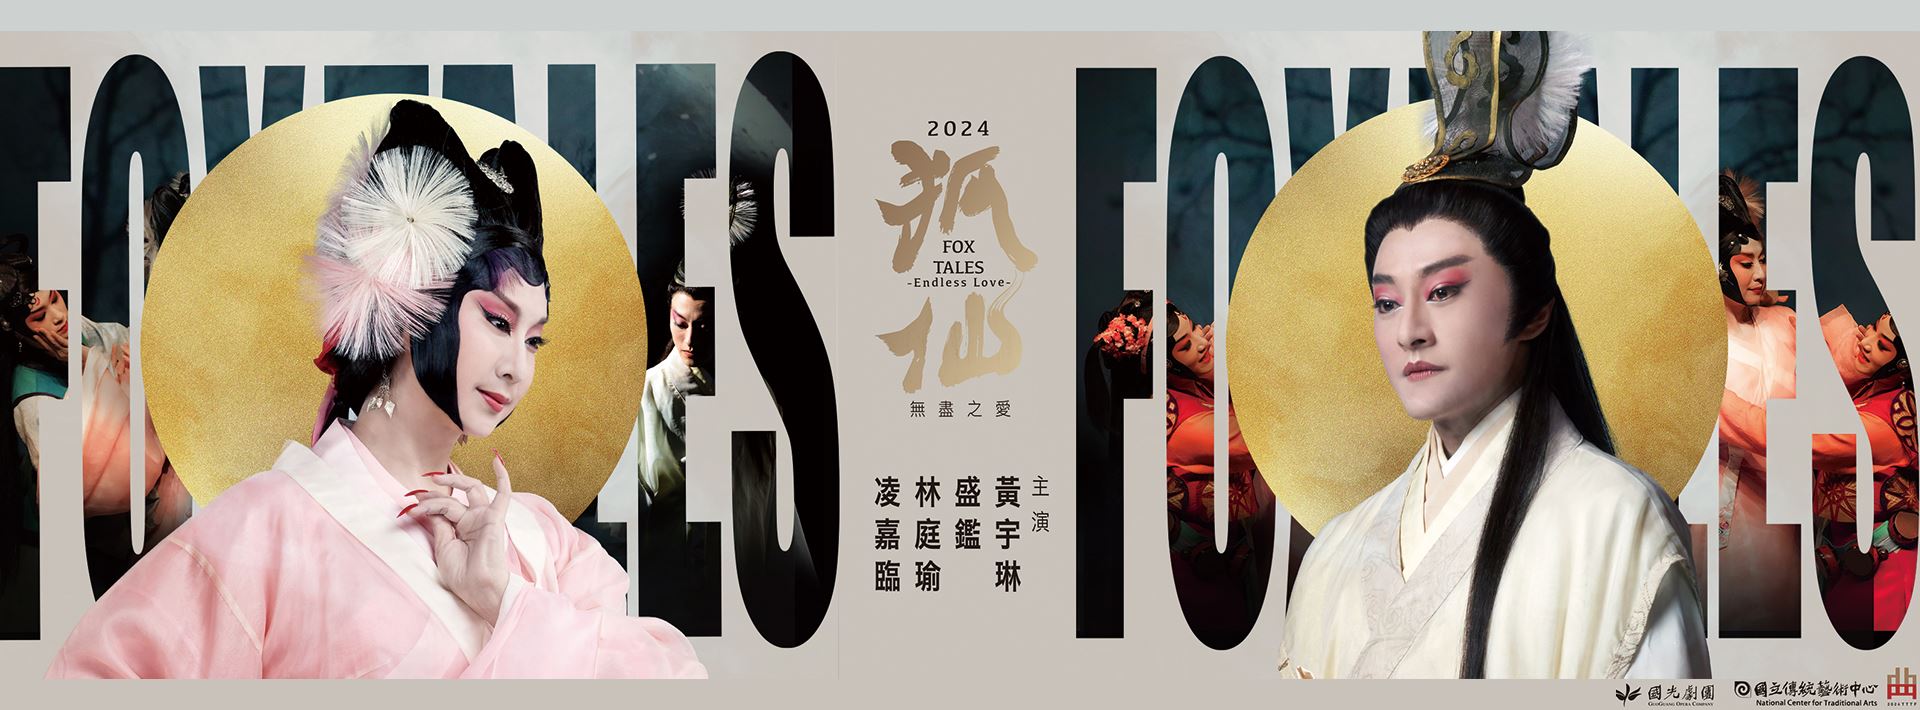 2024國光劇團《狐仙~無盡之愛》